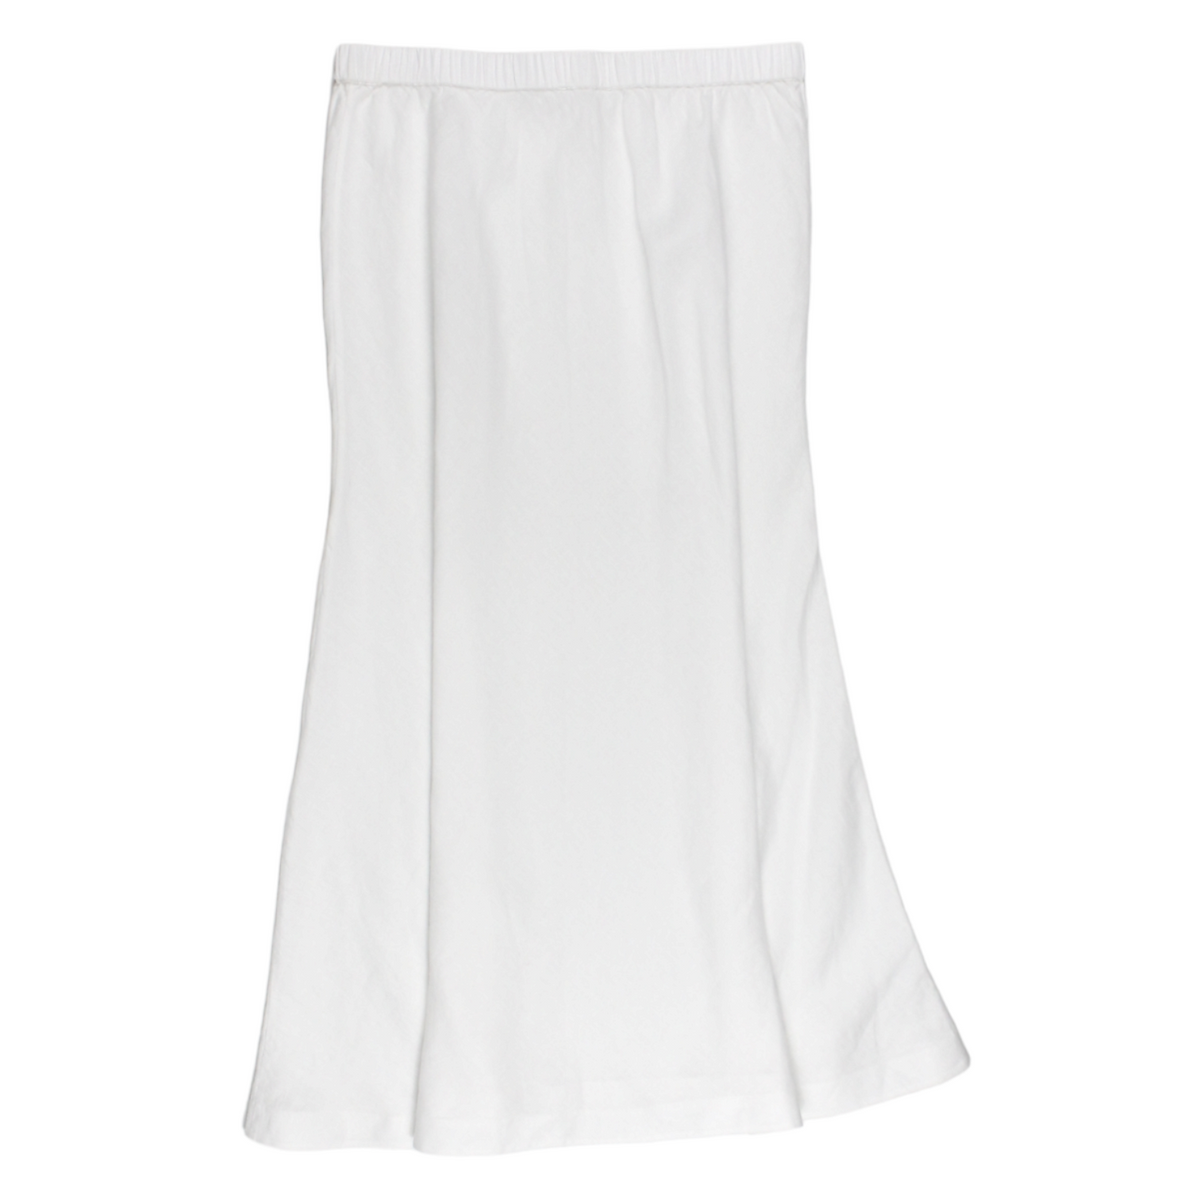 NRBY White Linen Skirt - Sample